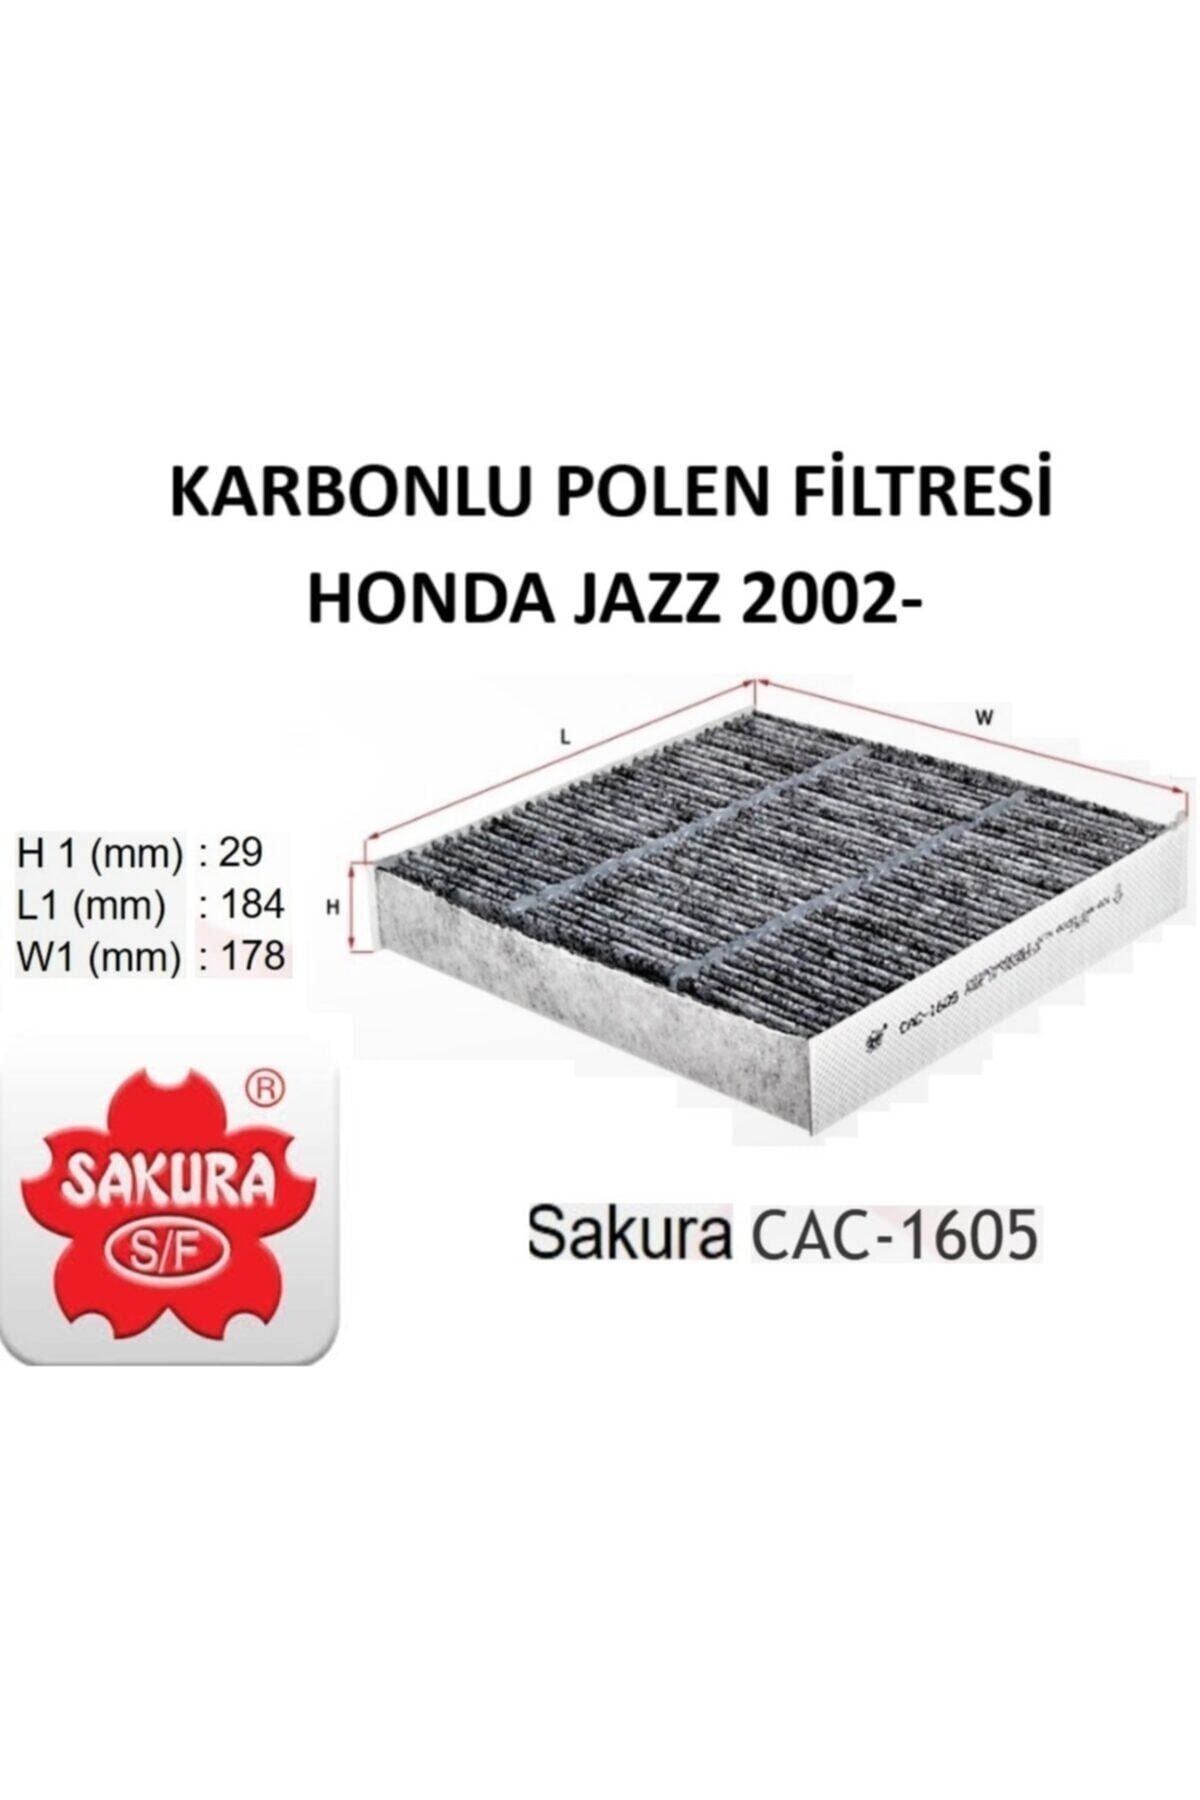 Sakura Polen Filtresi (karbonlu) [08r79saae01/cac1605]- Jazz 02- /swift